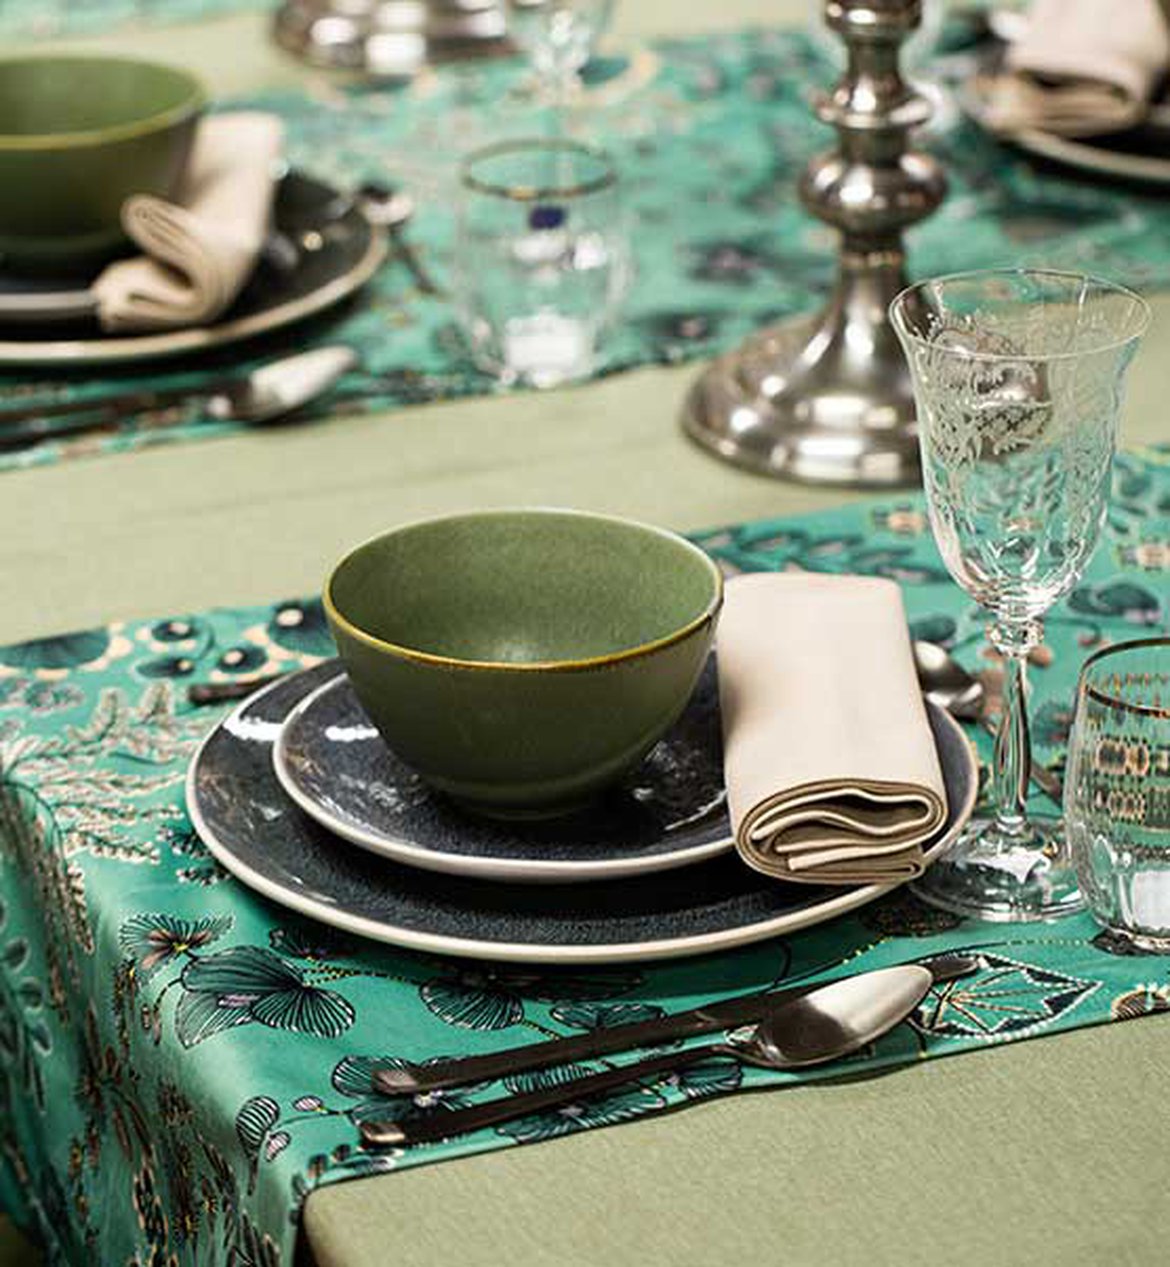 Décoration de table aux couleurs verte